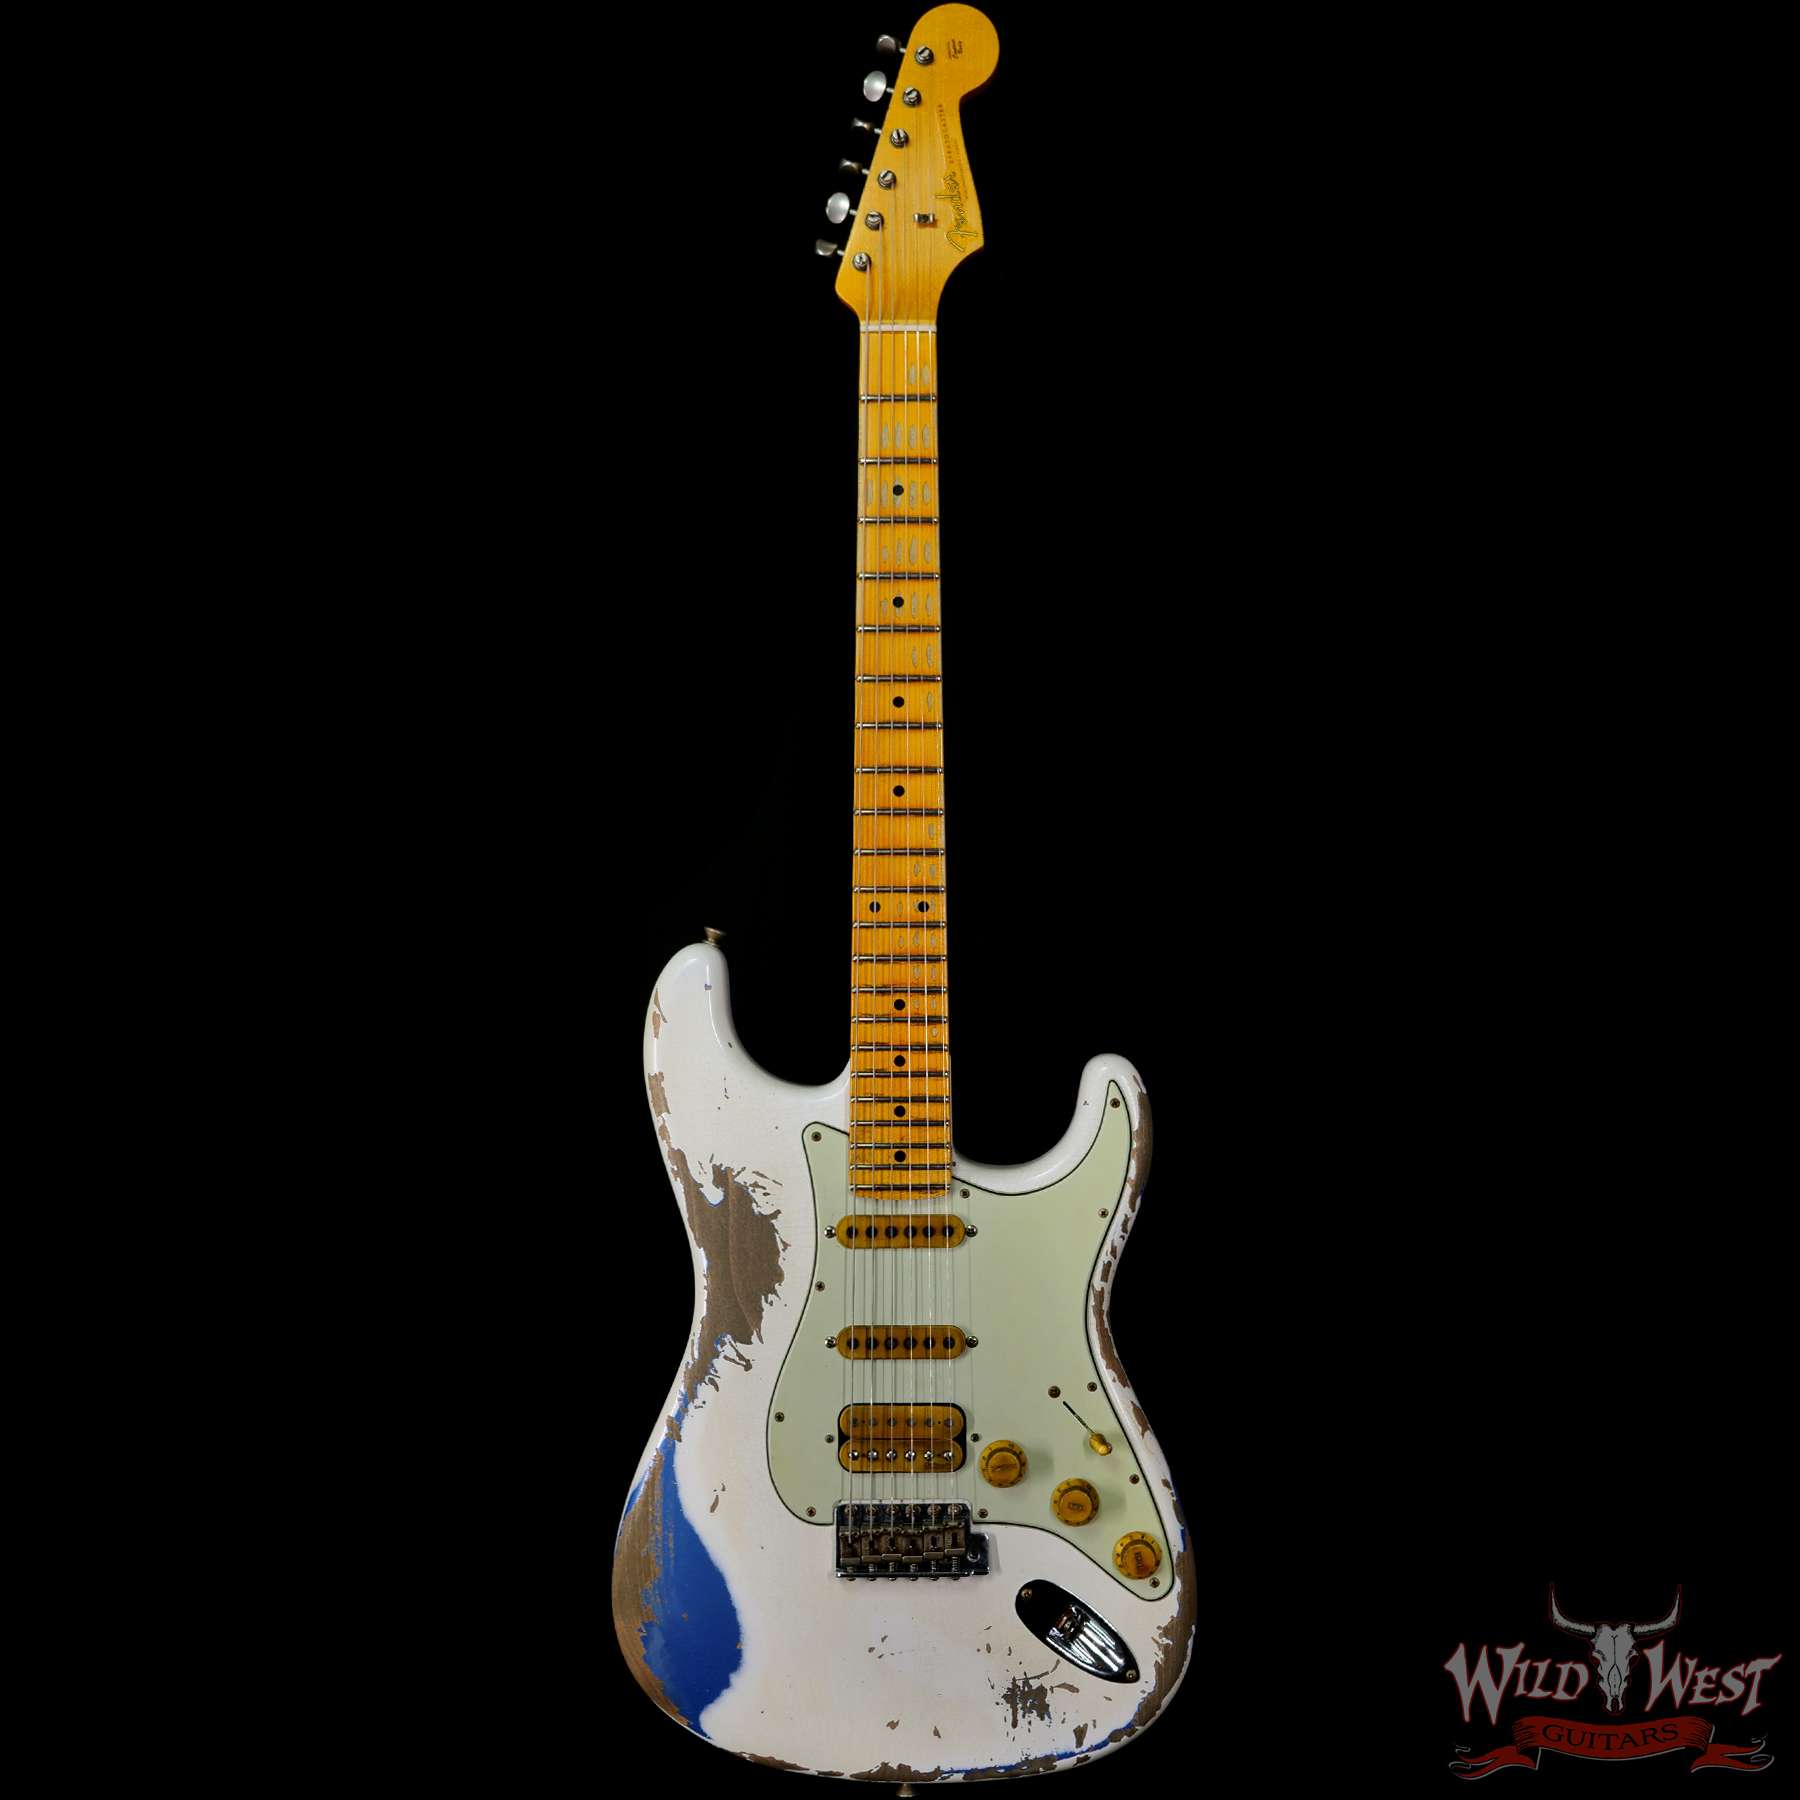 Fender Custom Shop Wild West White Lightning Stratocaster 2.0 Heavy Relic  Maple Fingeboard Lake Placid Blue